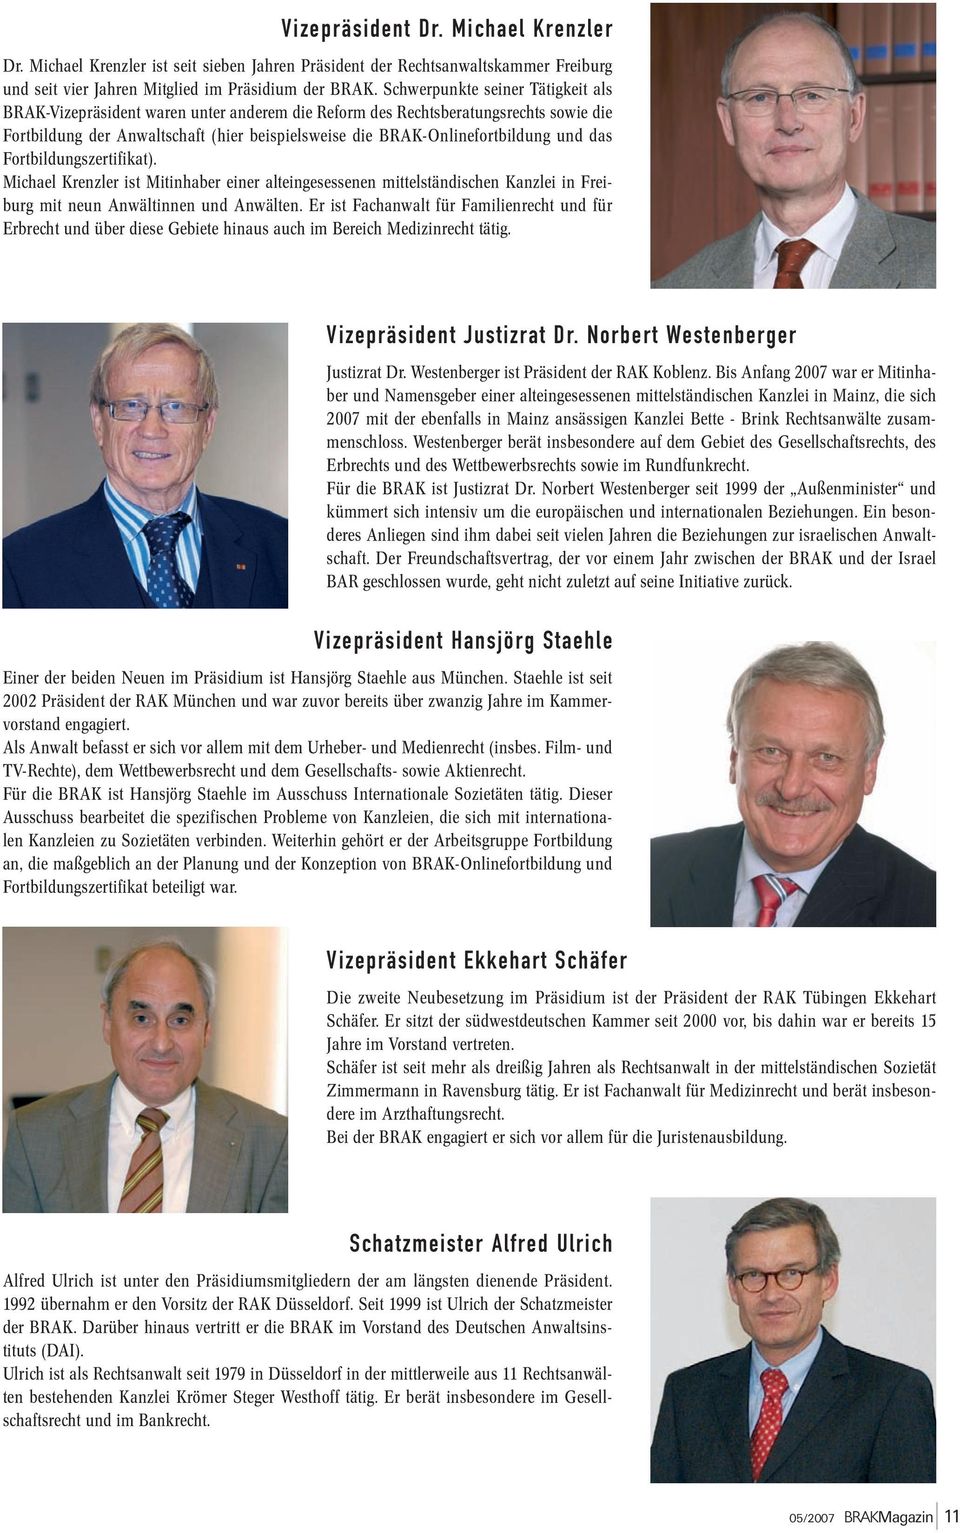 und das Fortbildungszertifikat). Michael Krenzler ist Mitinhaber einer alteingesessenen mittelständischen Kanzlei in Freiburg mit neun Anwältinnen und Anwälten.